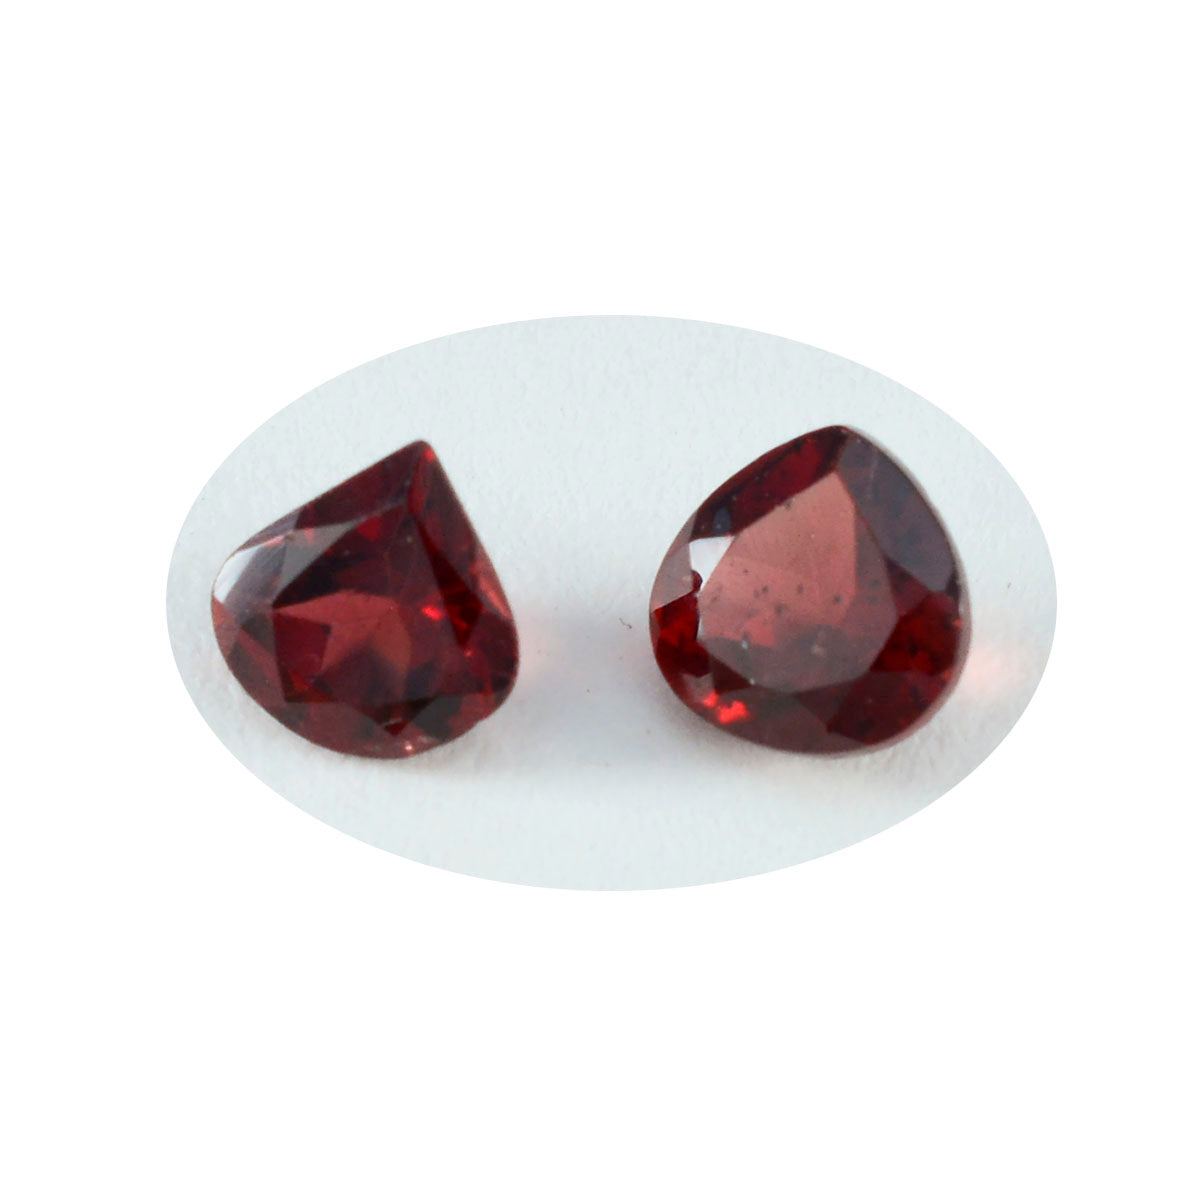 riyogems 1 шт. натуральный красный гранат ограненный 9x9 мм красивые качественные драгоценные камни в форме сердца